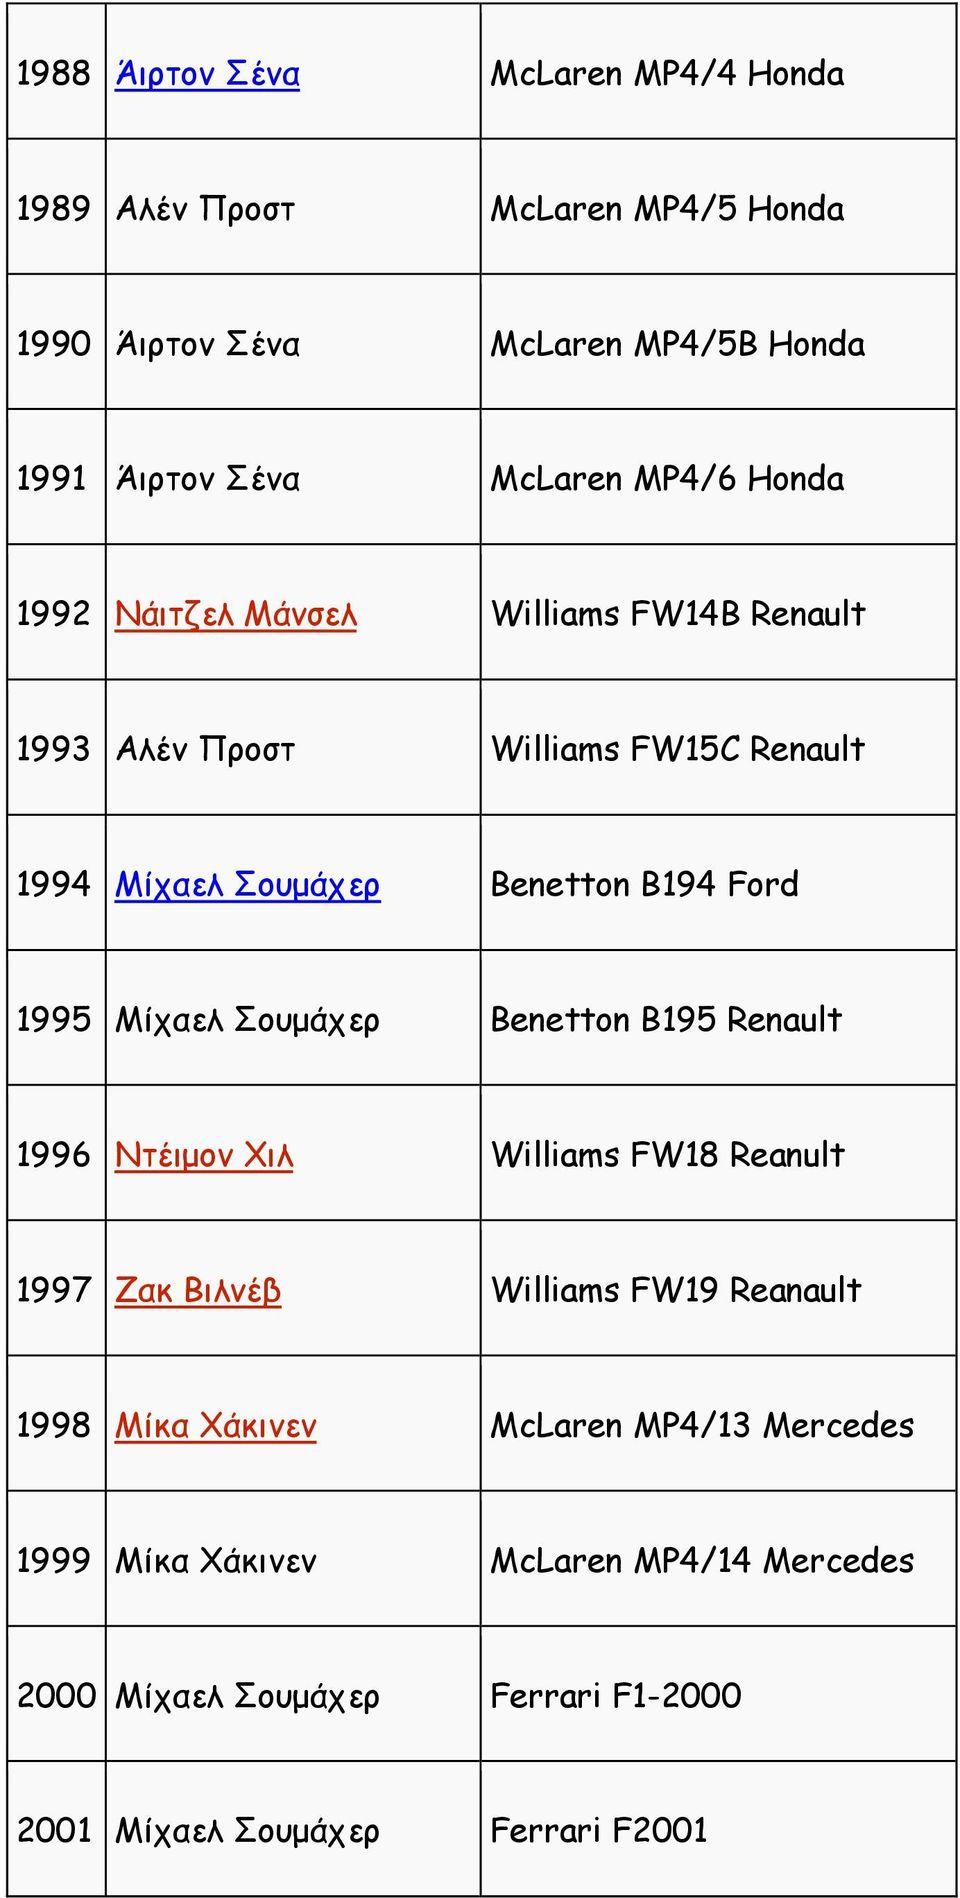 1995 Μίχαελ Σουµάχερ Benetton B195 Renault 1996 Ντέιµον Χιλ Williams FW18 Reanult 1997 Ζακ Βιλνέβ Williams FW19 Reanault 1998 Μίκα